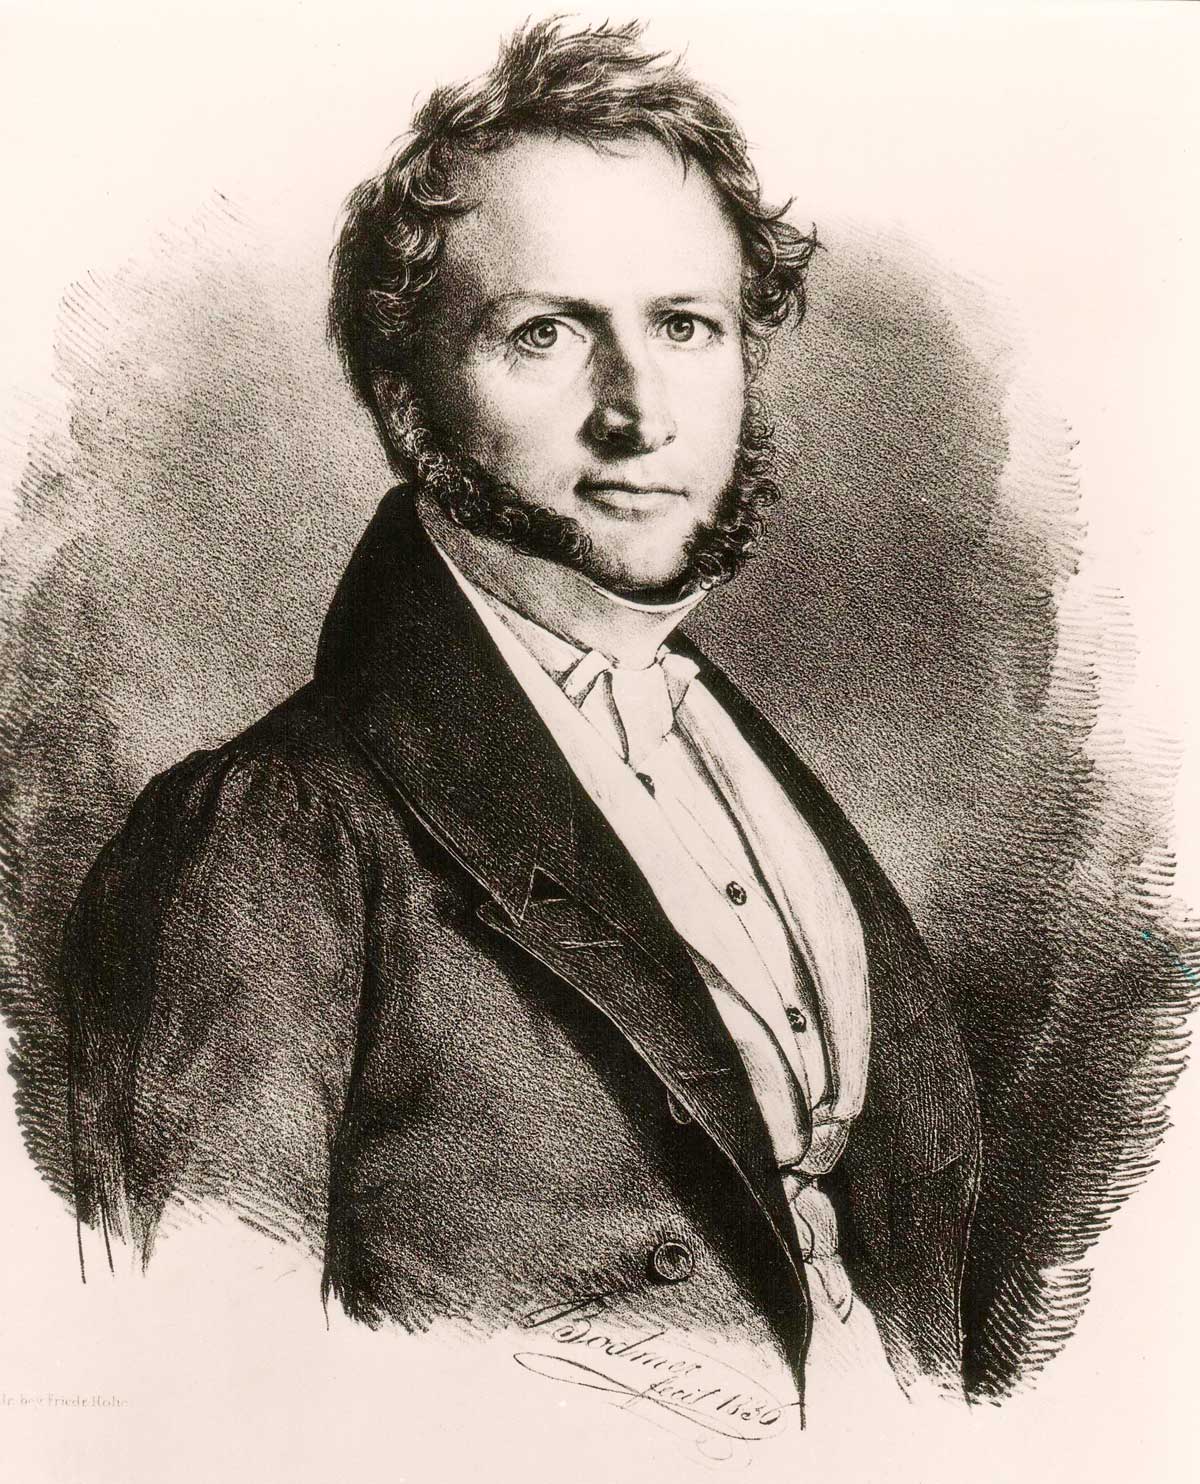 Maurer Georg Ludwig von